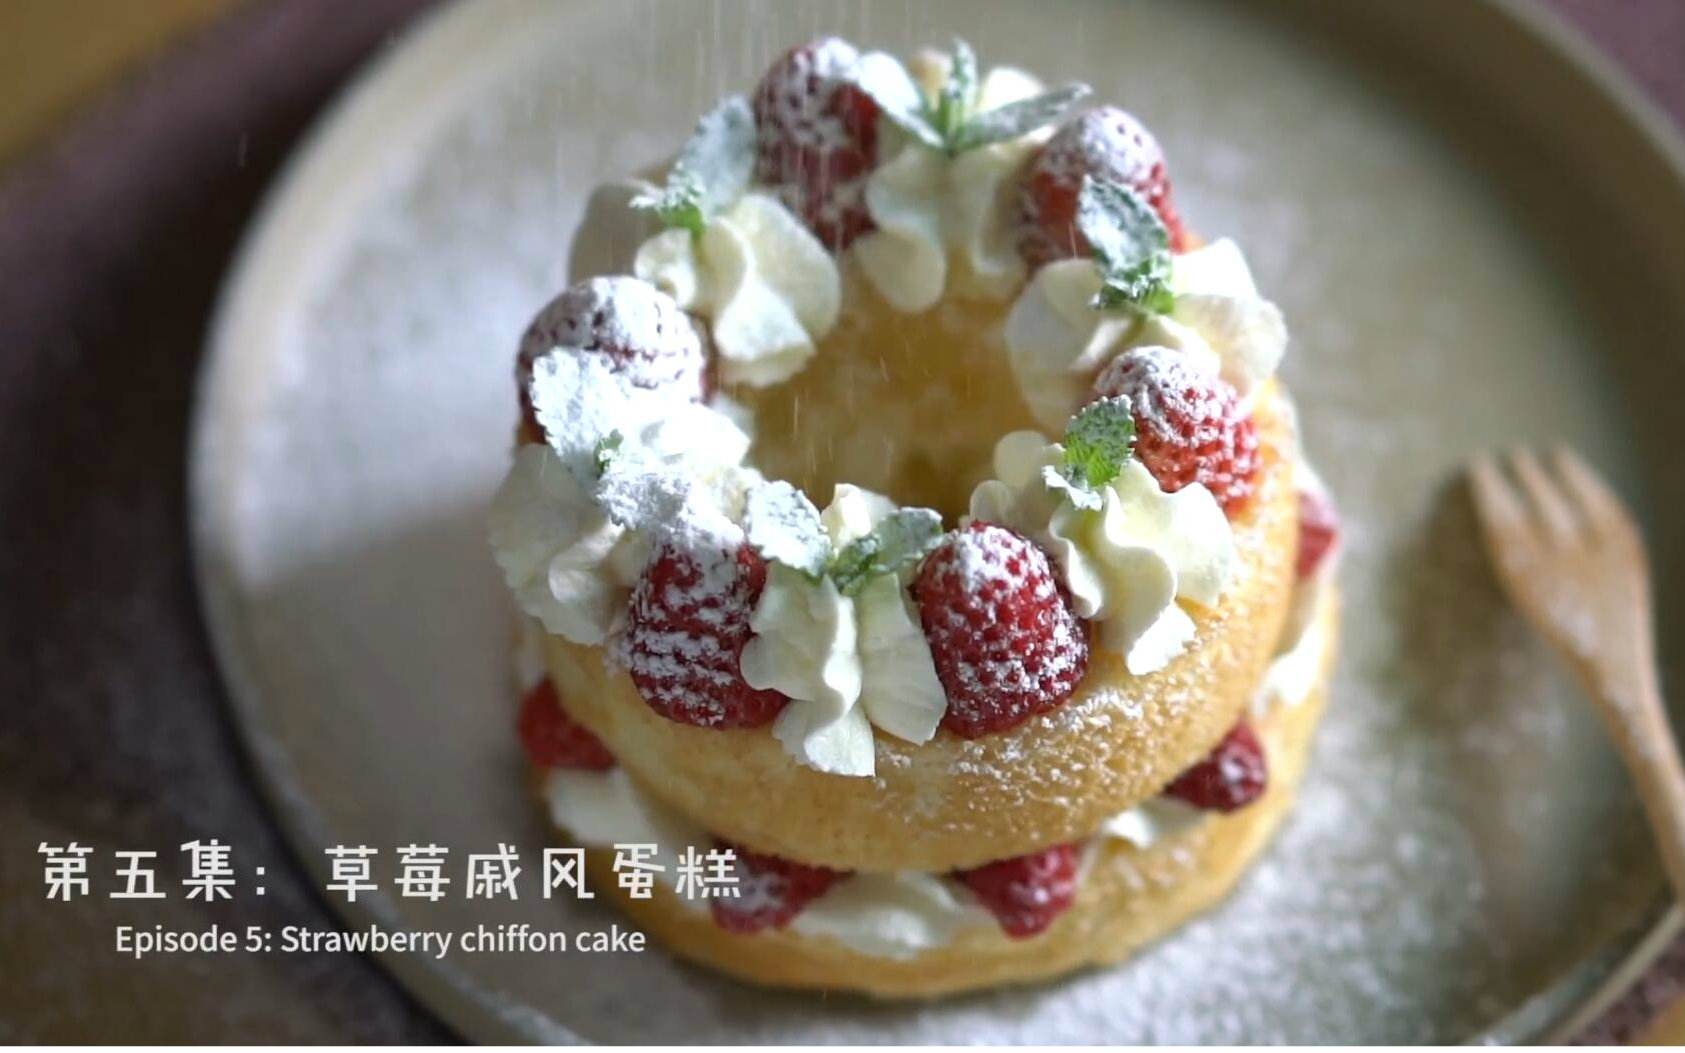 【烘焙課程】季節限定-鮮奶油草莓戚風蛋糕 (成人班) – paint81